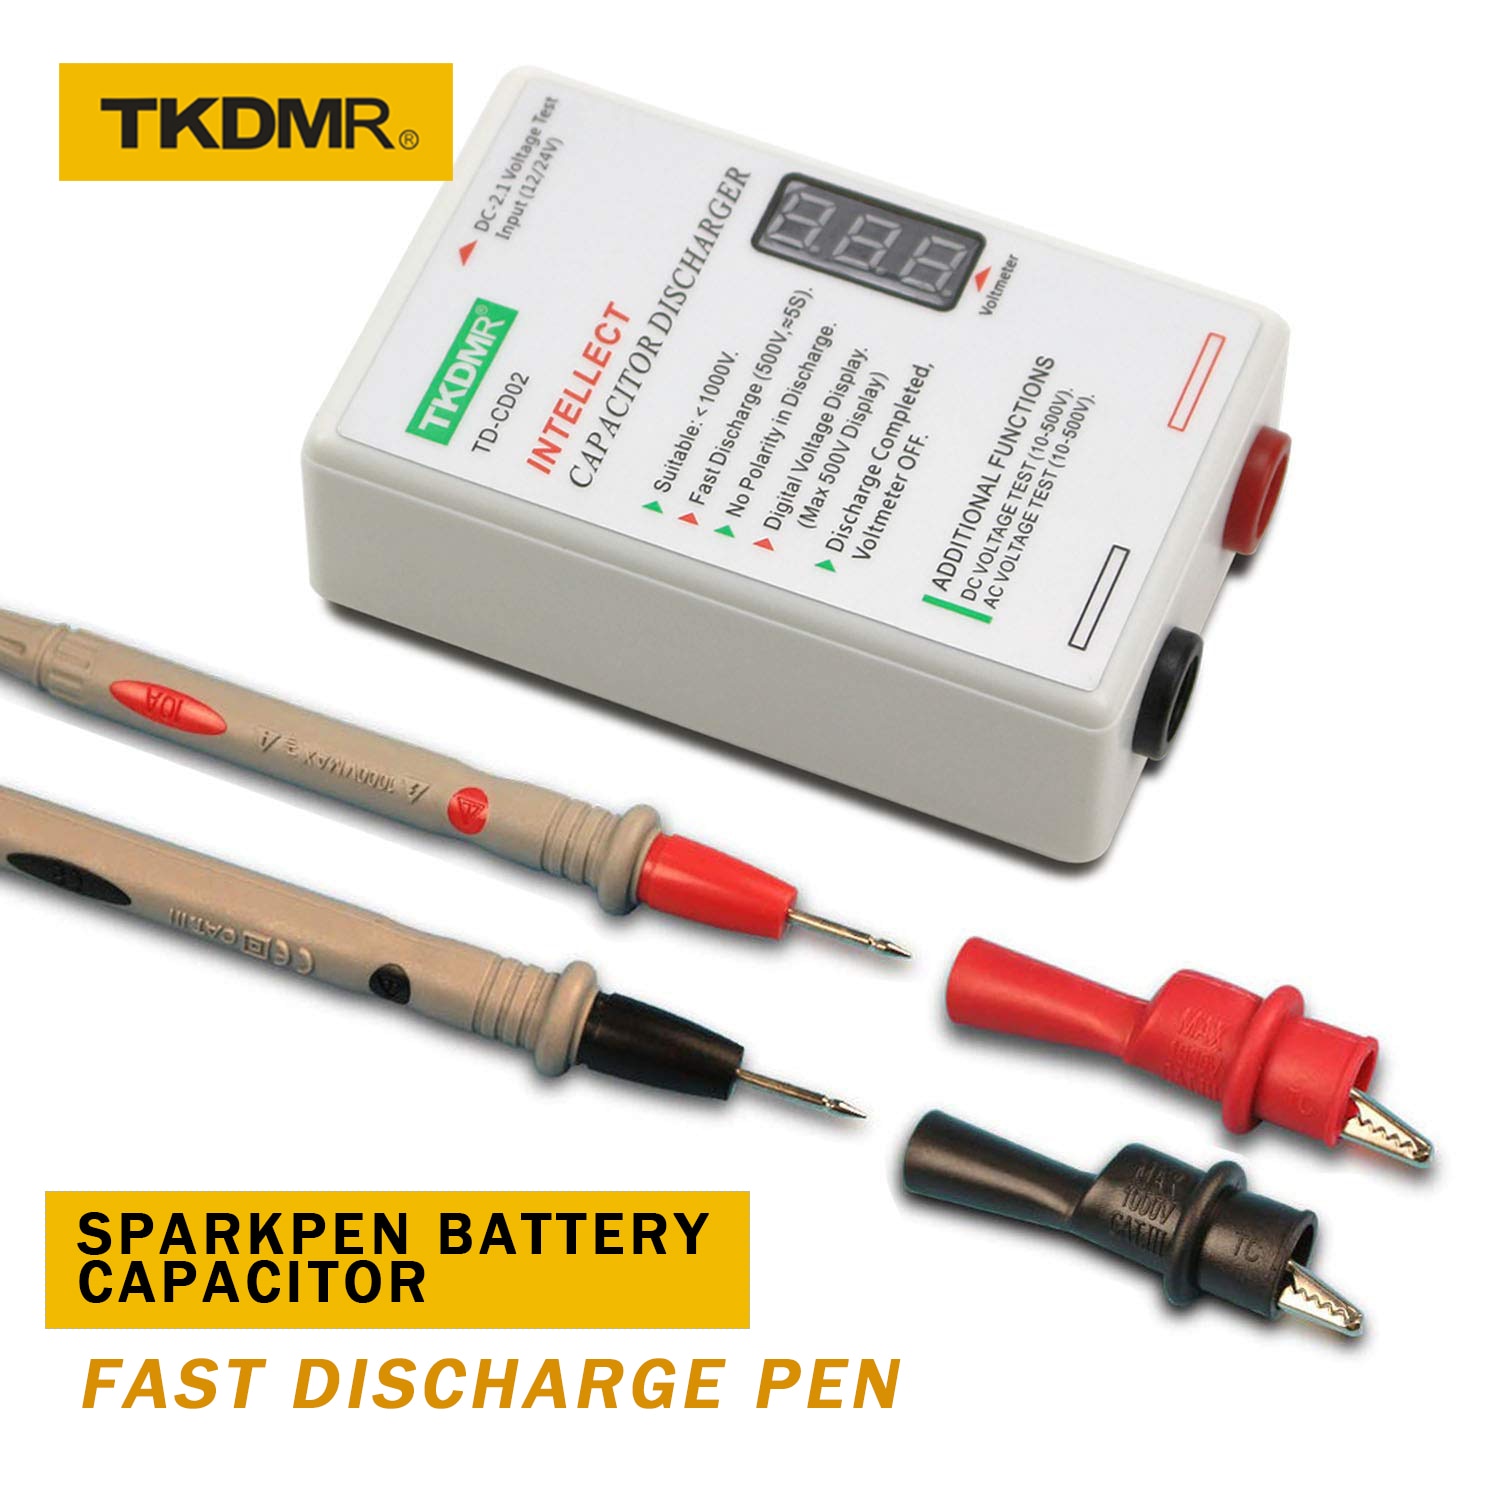 TKDMR Sparkpen Battery Capacitor Fast Discharge Pen Discharger